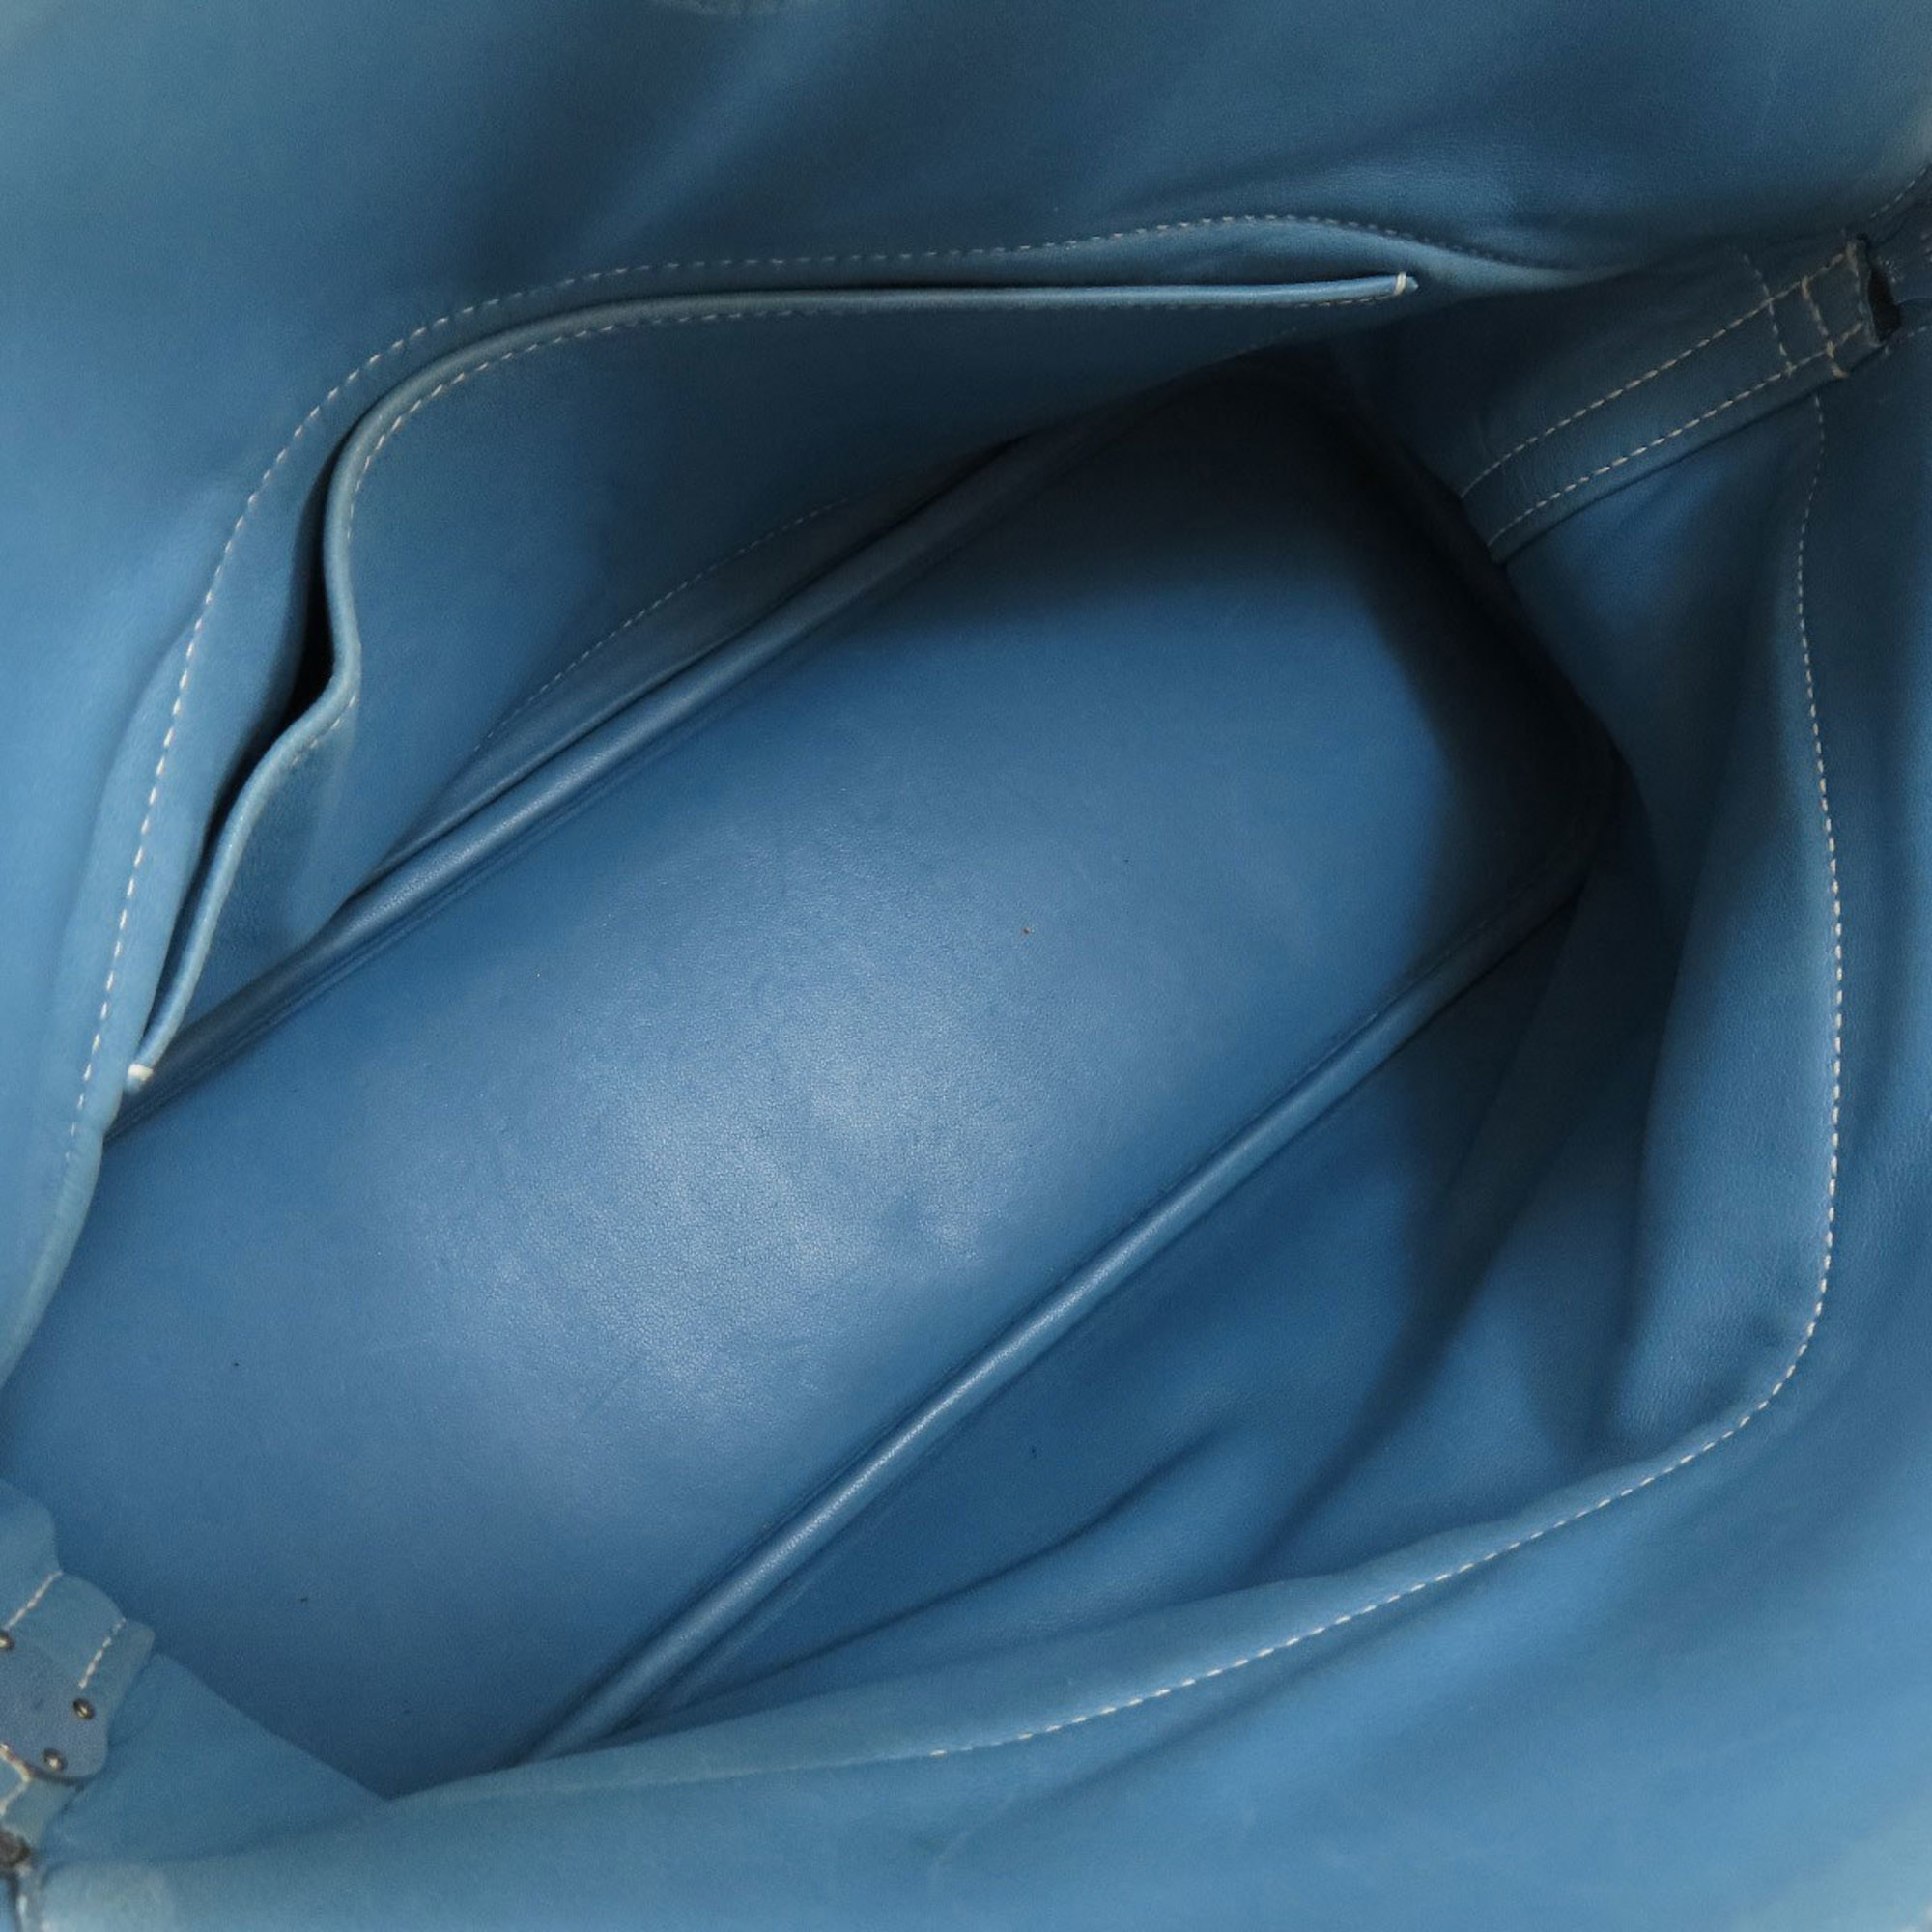 Hermes Bolide 31 Blue Jean Handbag Taurillon Women's HERMES